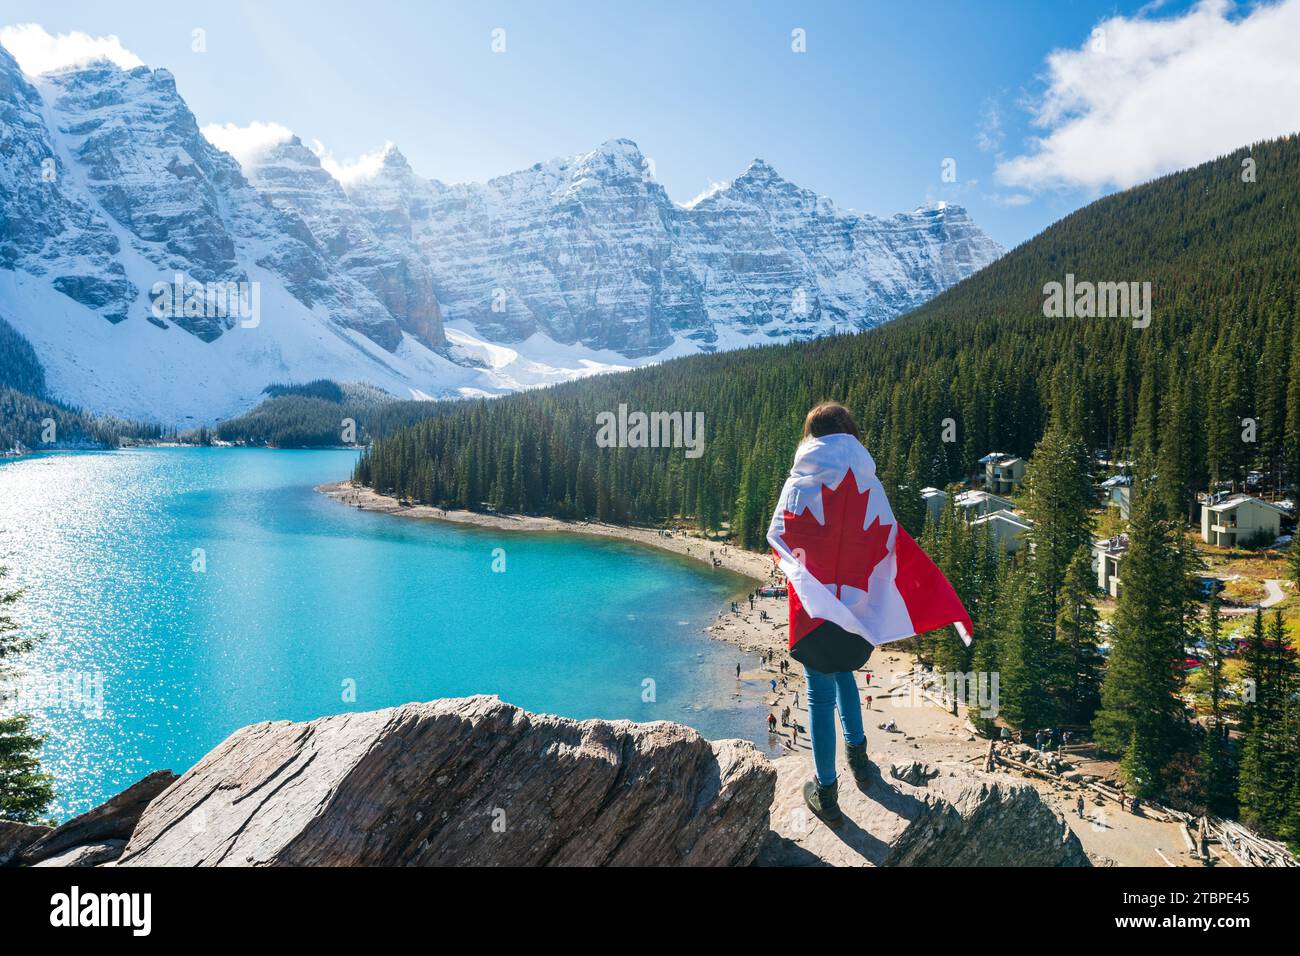 Touristen mit kanadischer Flagge und schöner Landschaft des Moraine Sees. Banff National Park. Kanadische Rockies. Alberta, Kanada. Stockfoto